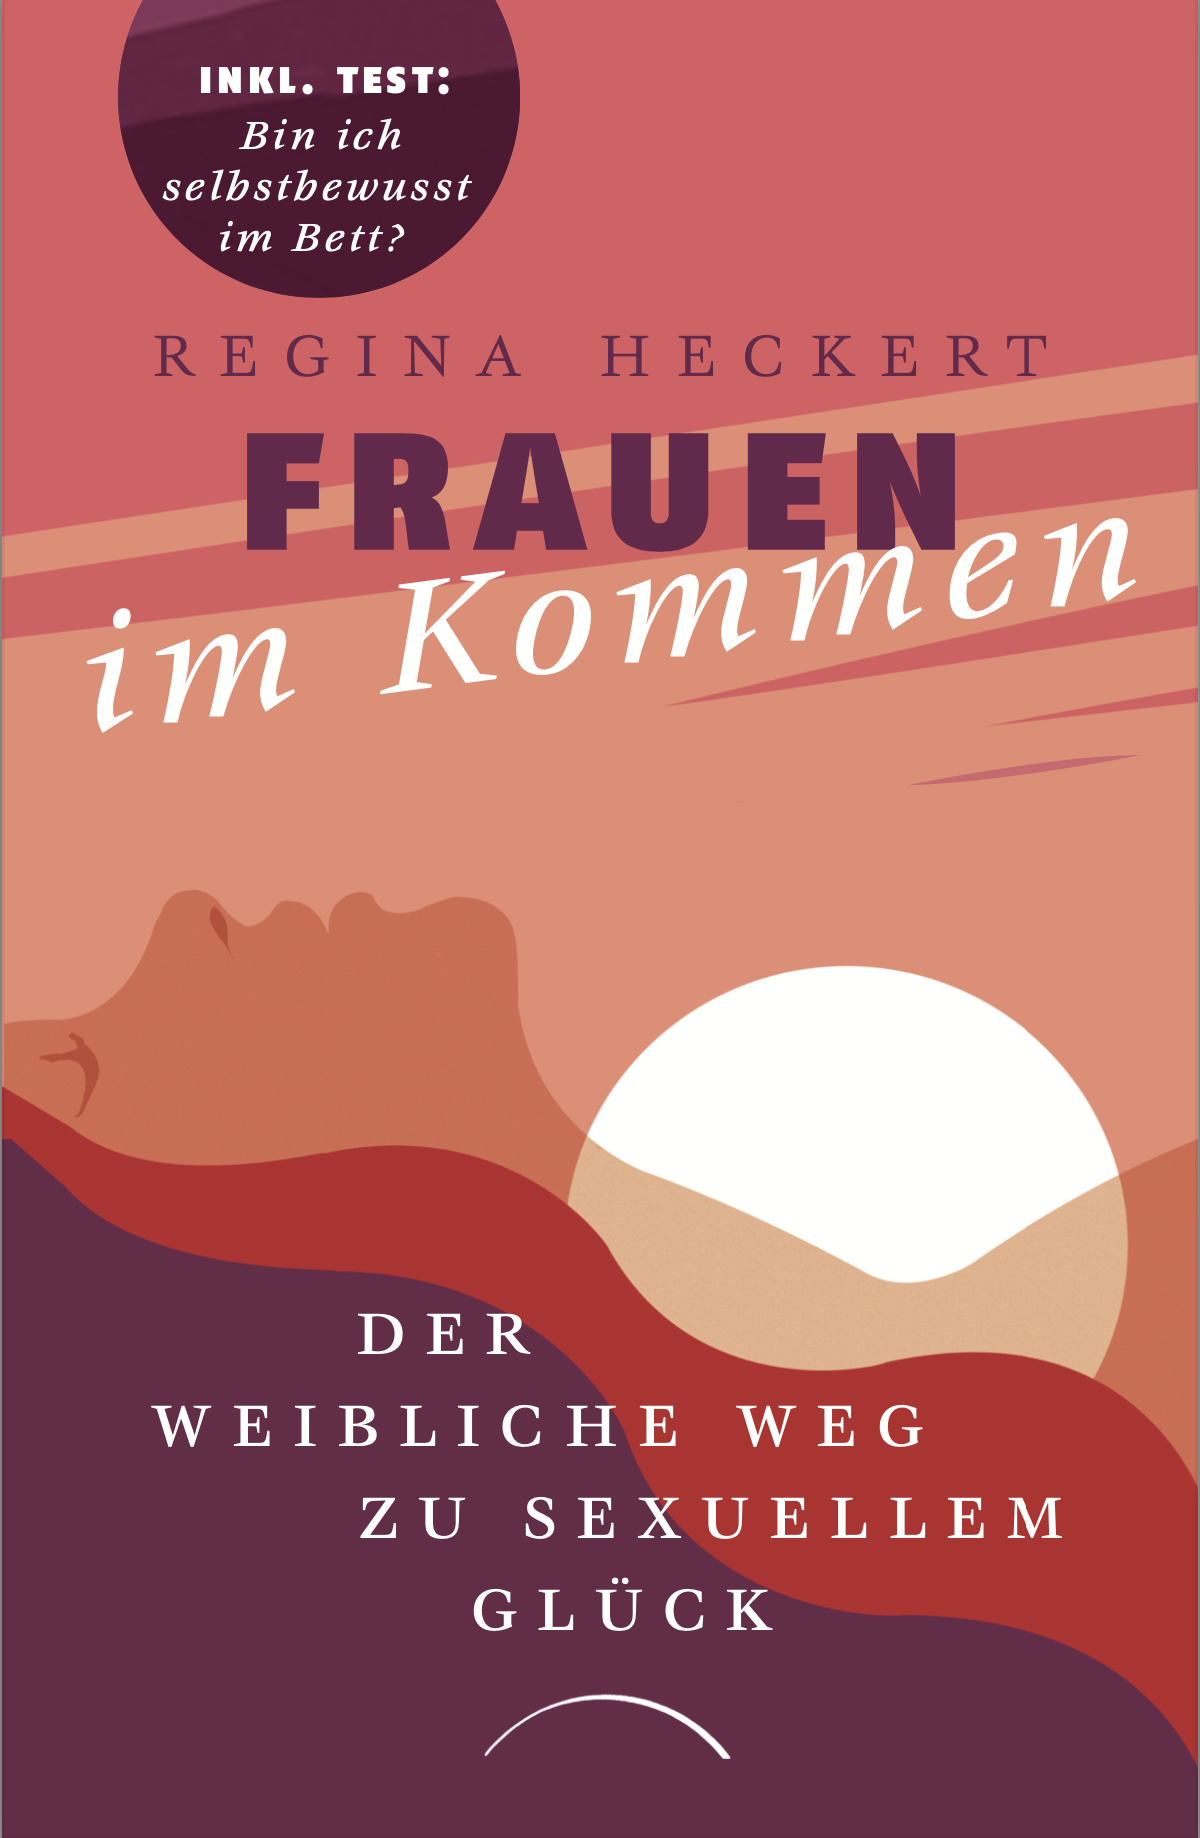 Das Buch "Frauen im Kommen" von Regina Heckert